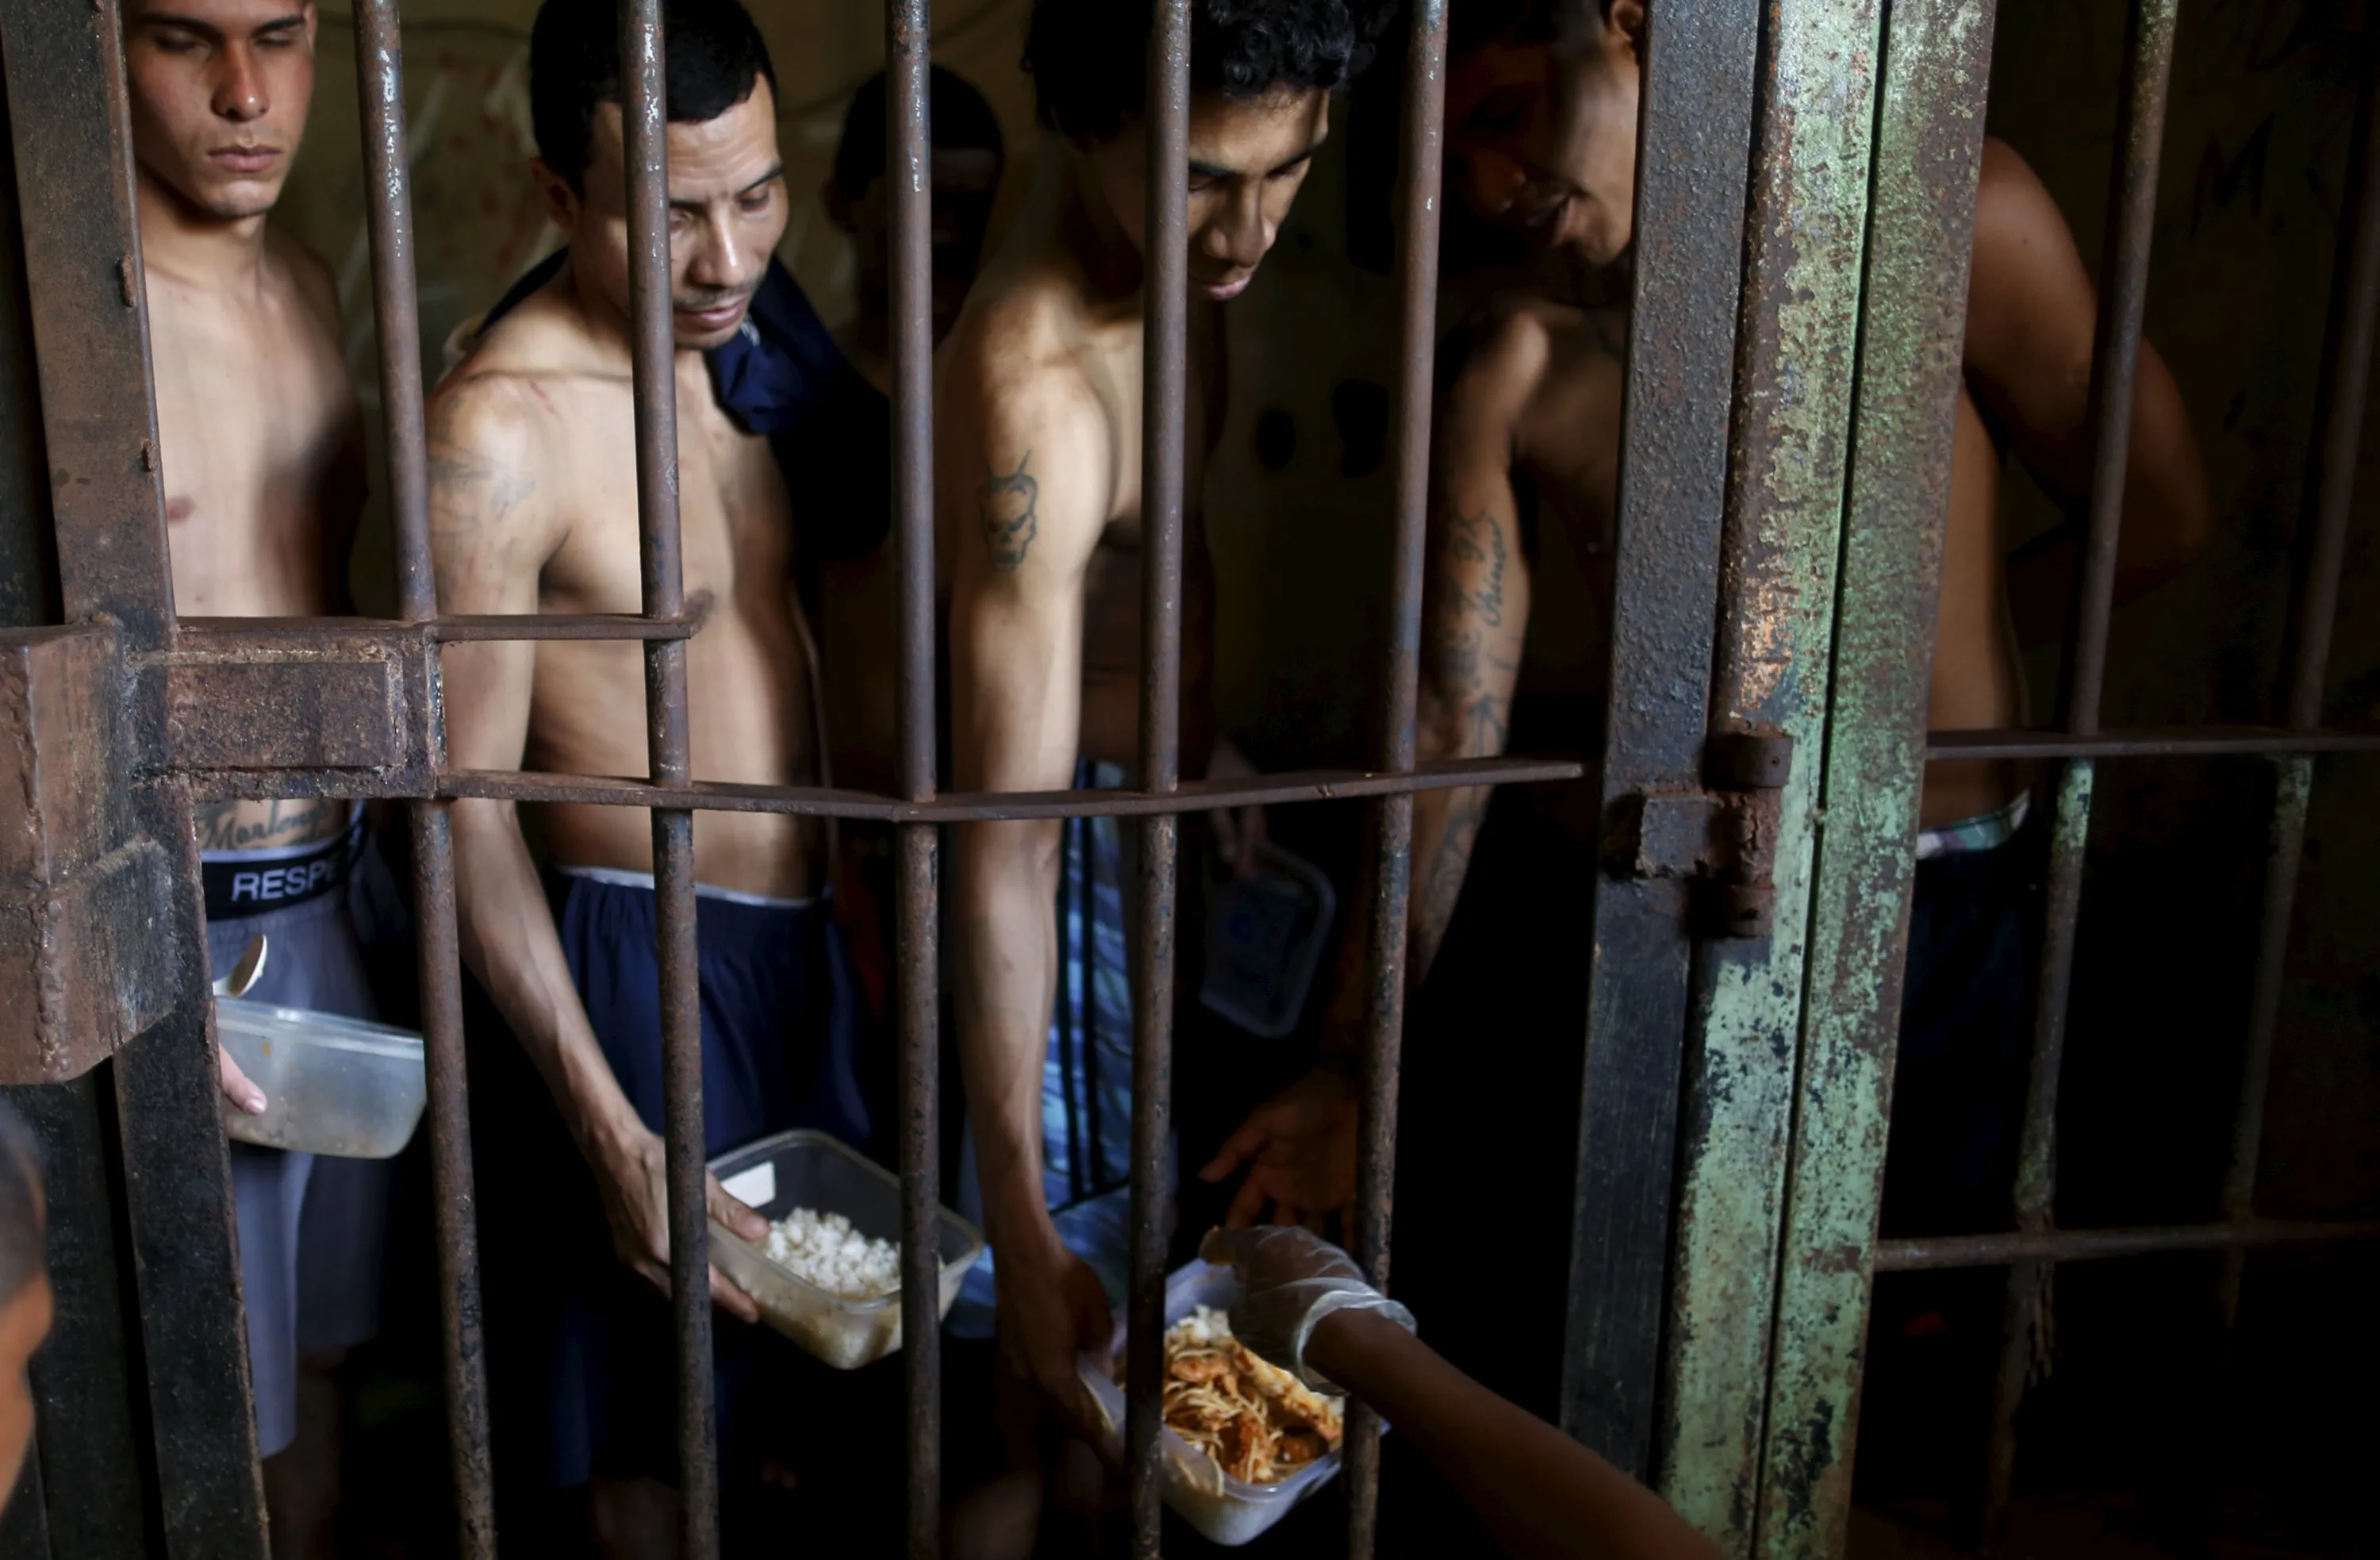 Стала тюремной дыркой. Тюрьма Prison 2014. Сальвадор, тюрьма Сьюдад Барриоса. Камера с заключенными.